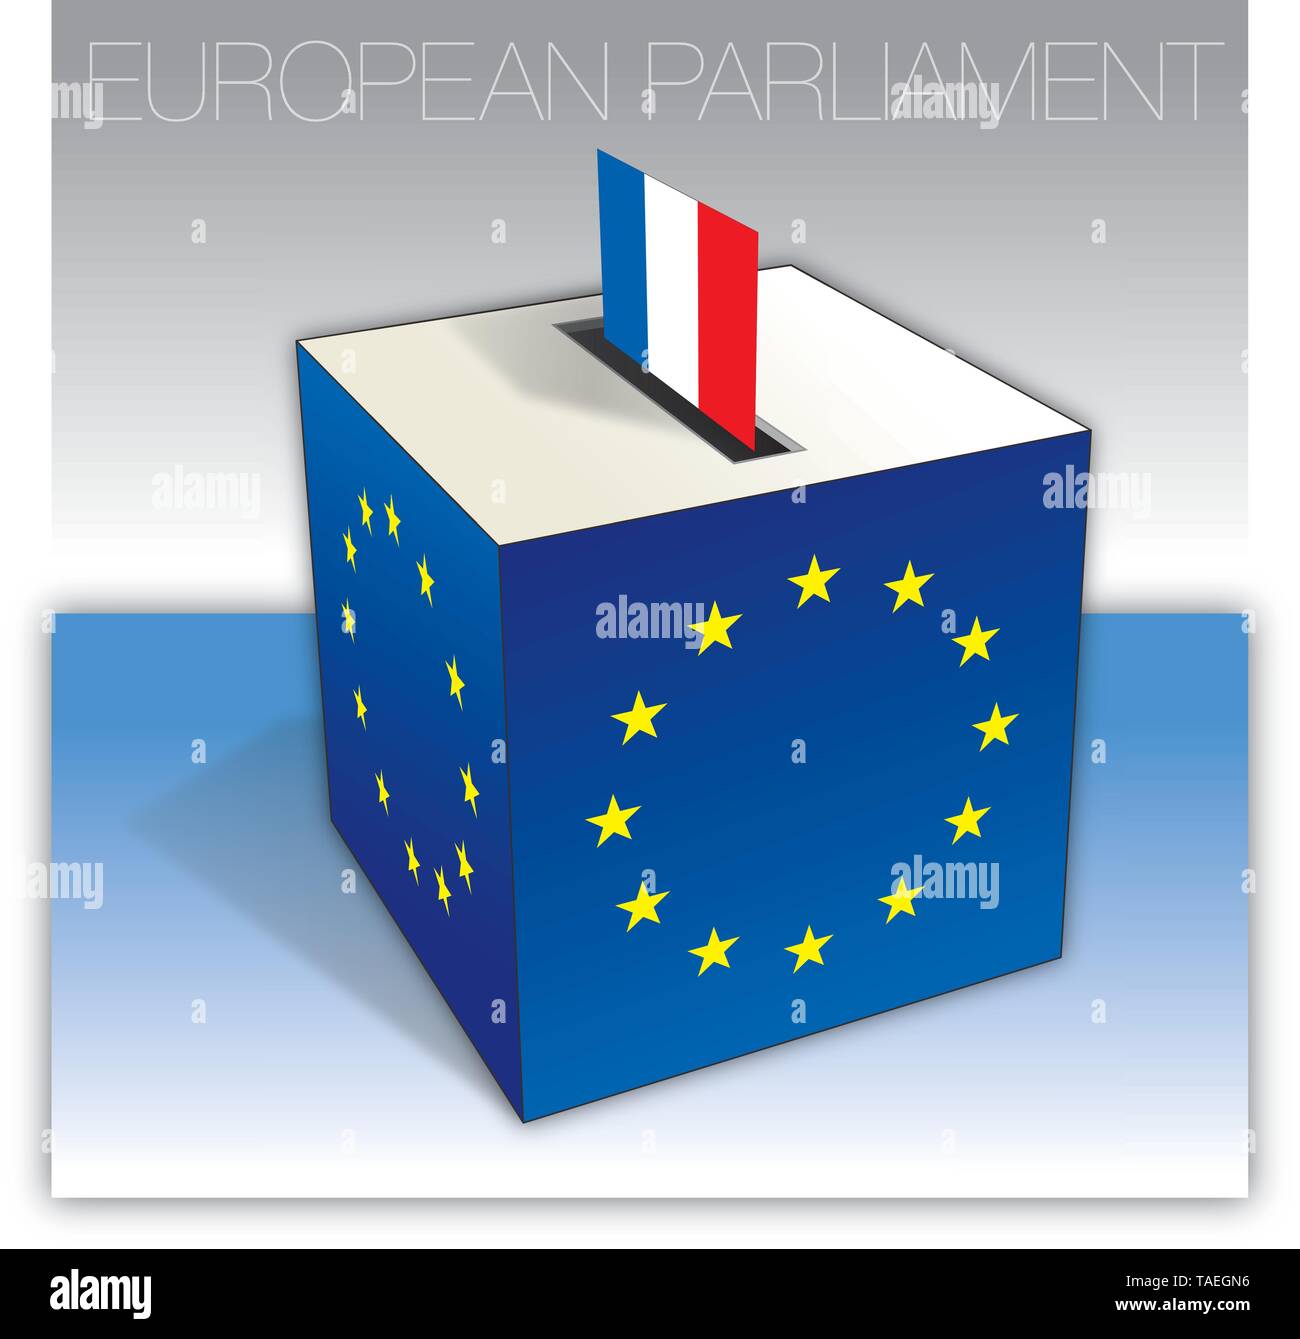 La France, fort, vote aux élections du Parlement européen, d'un drapeau et symboles nationaux, vector illustration Illustration de Vecteur